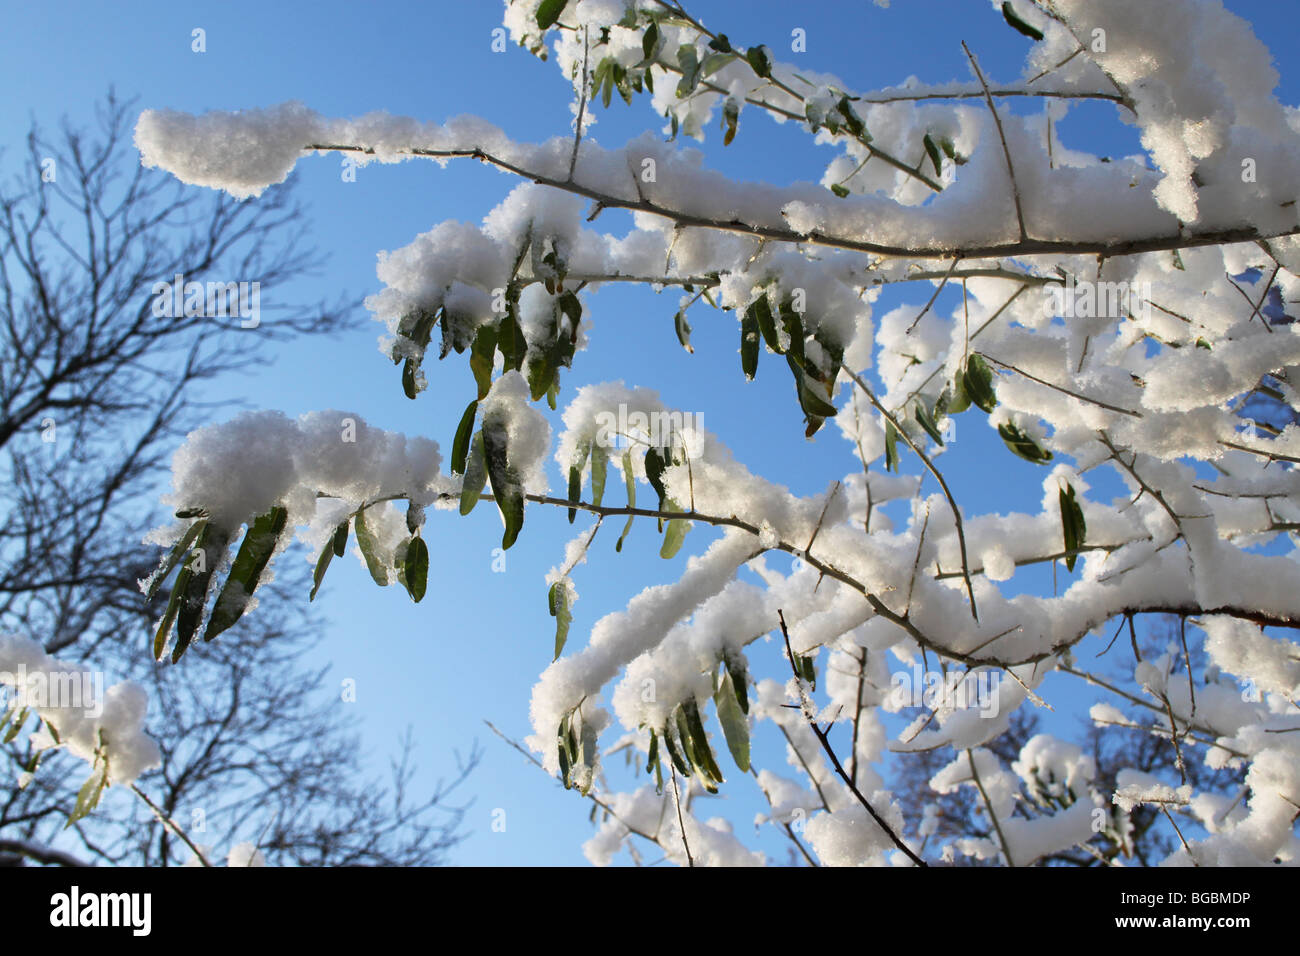 Las ramas cubiertas de nieve y azul cielo invernal, Crystal Palace Park, Londres, Reino Unido. Foto de stock